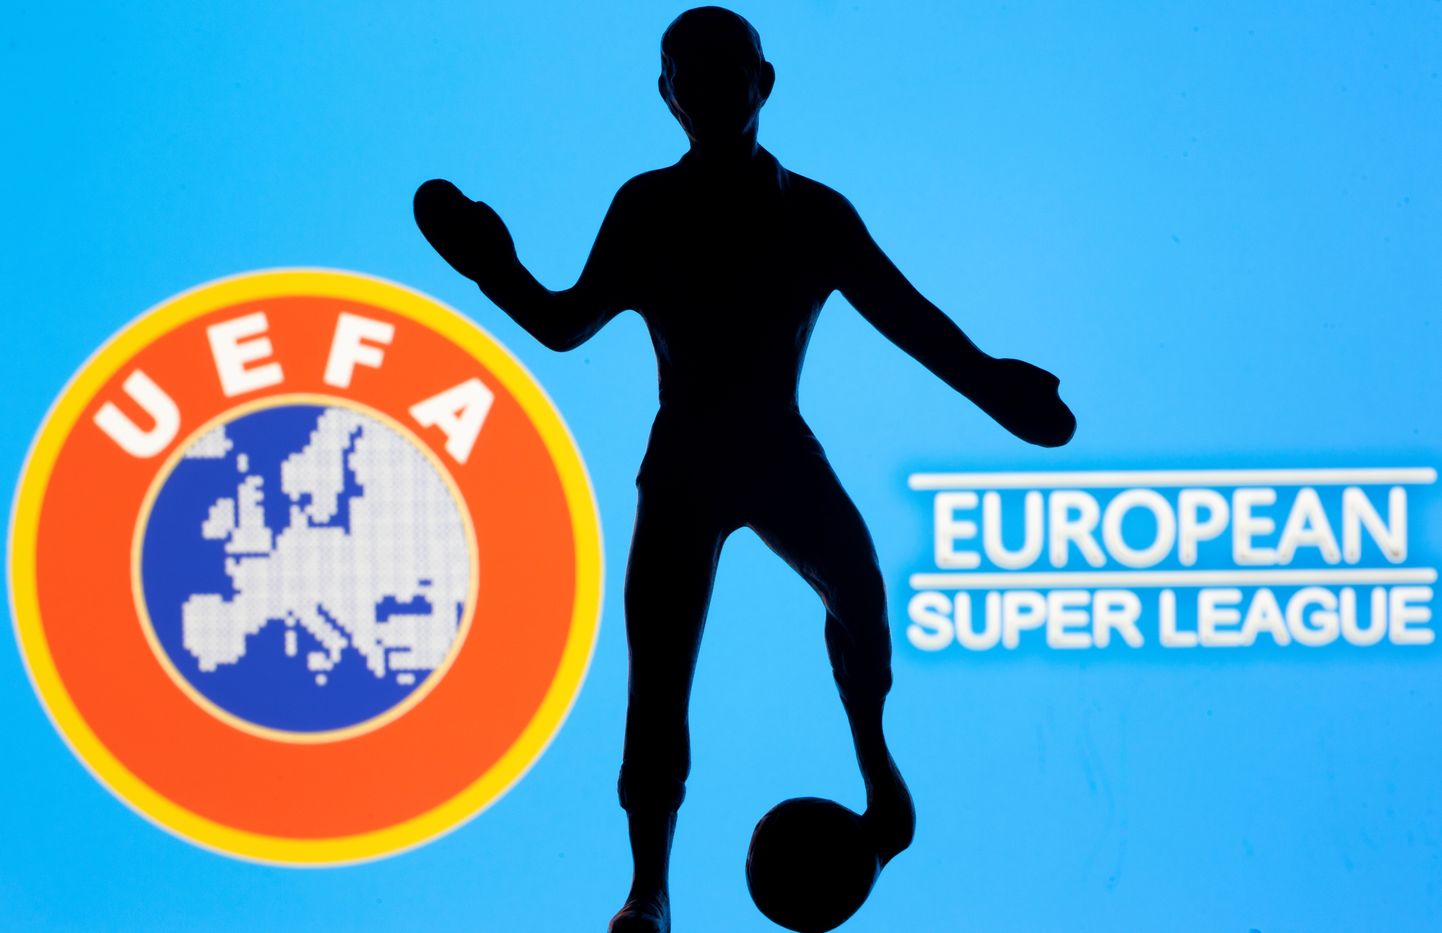 Illustratsioon UEFA logost ja Euroopa superliigast. Foto on illustratiivne.